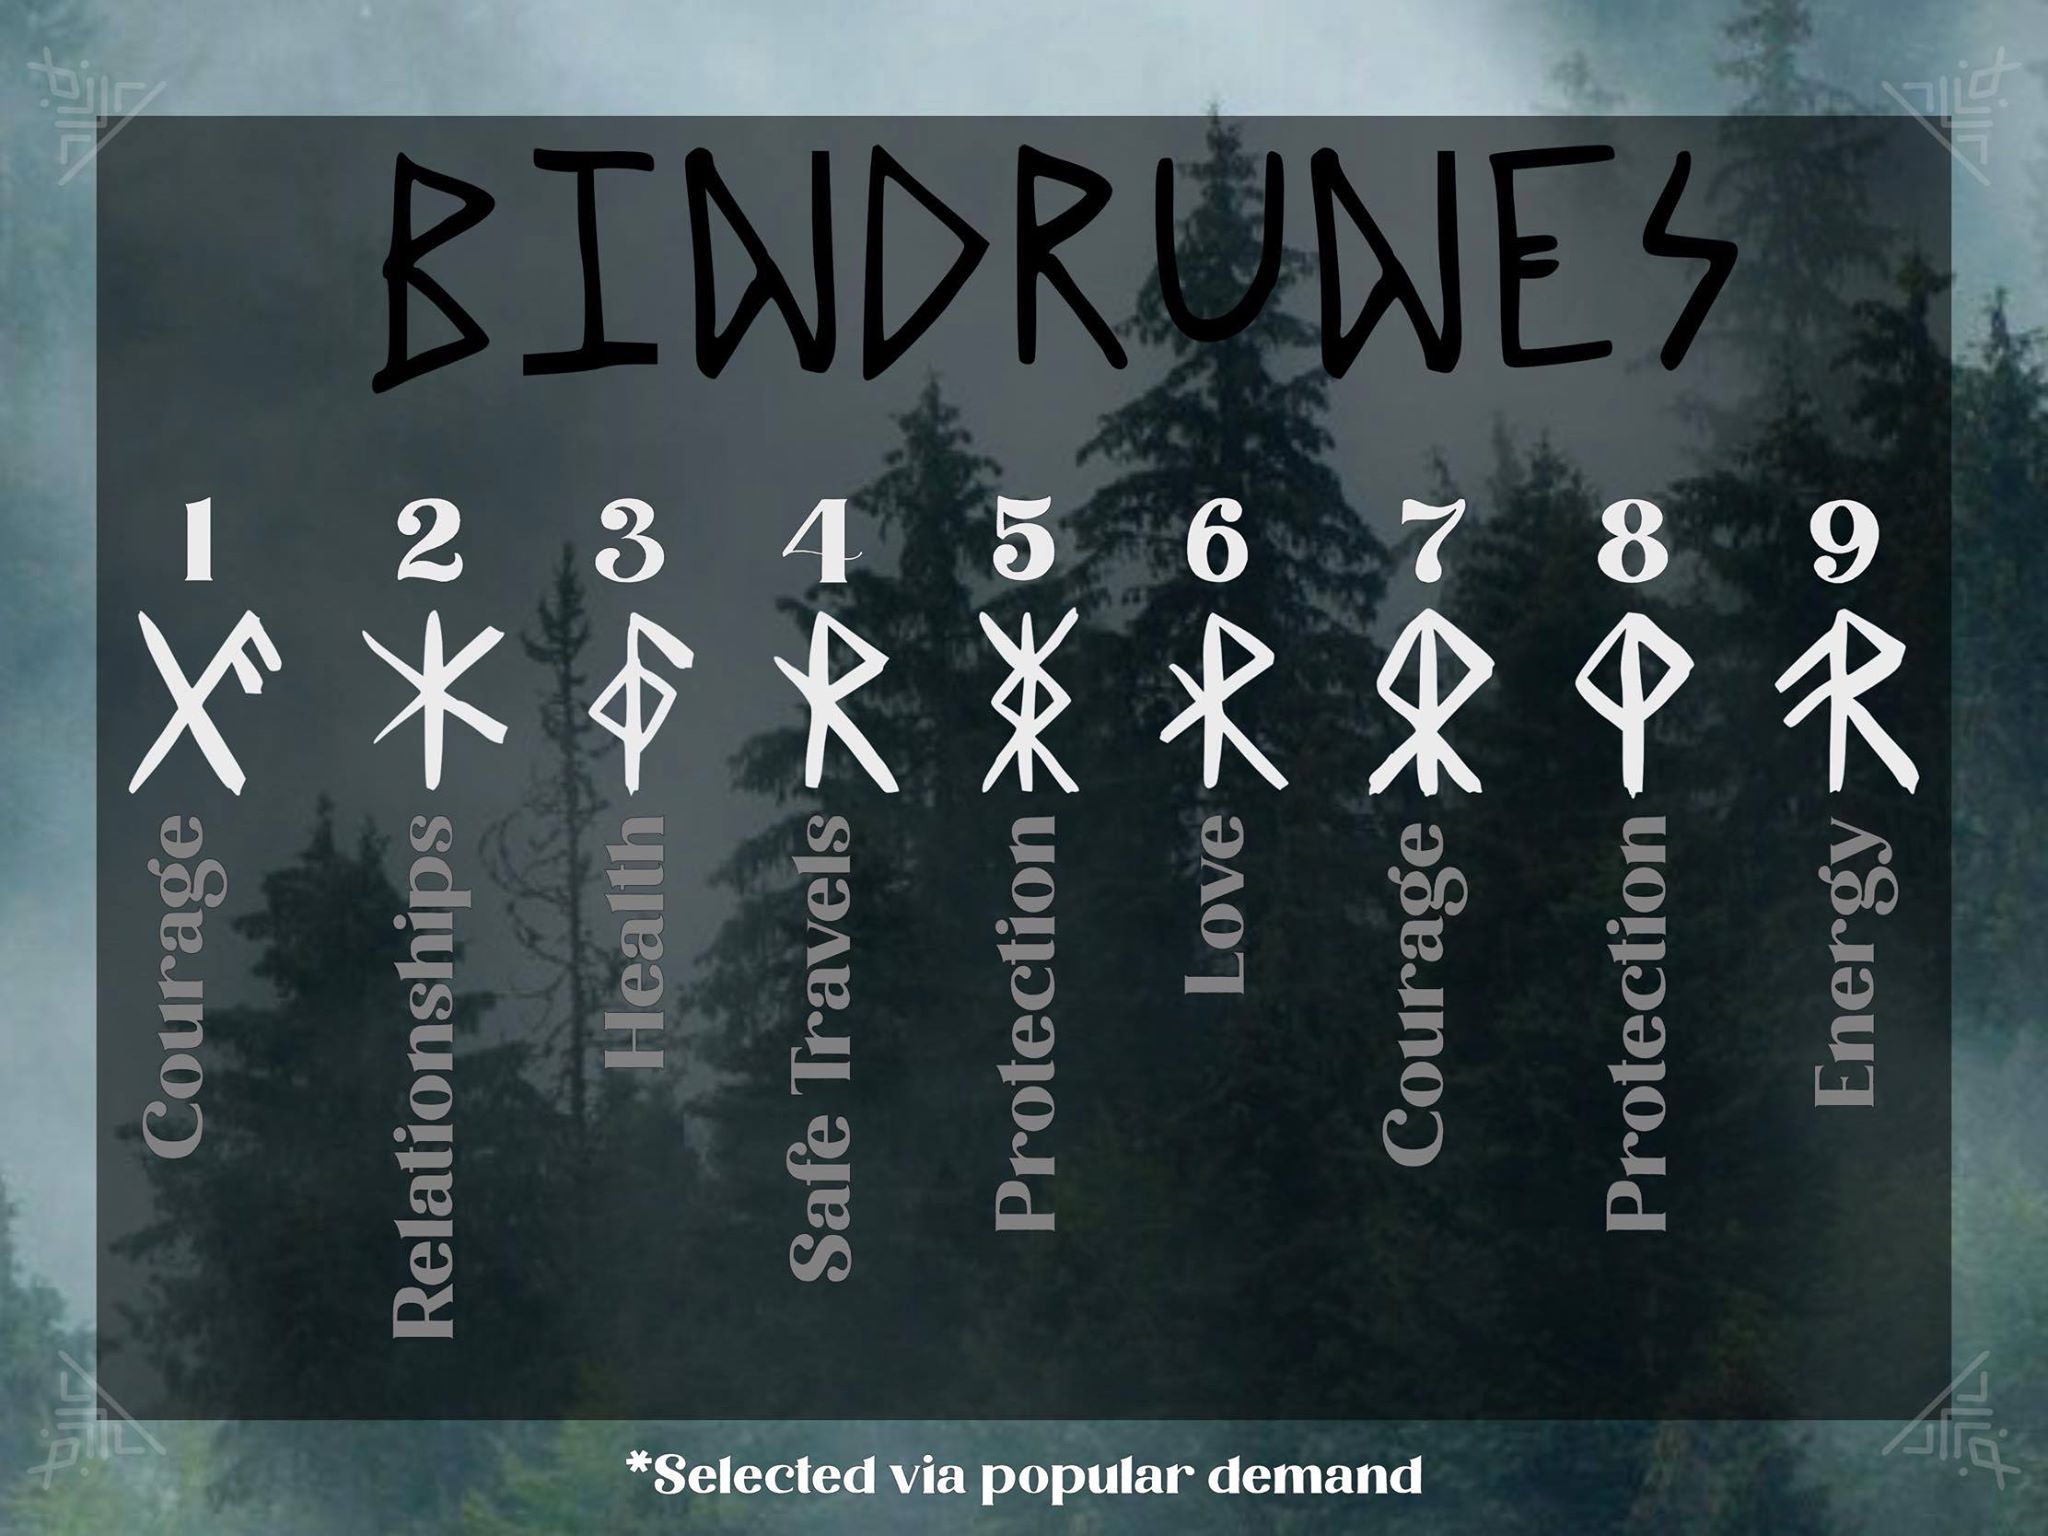 rune elder futhark